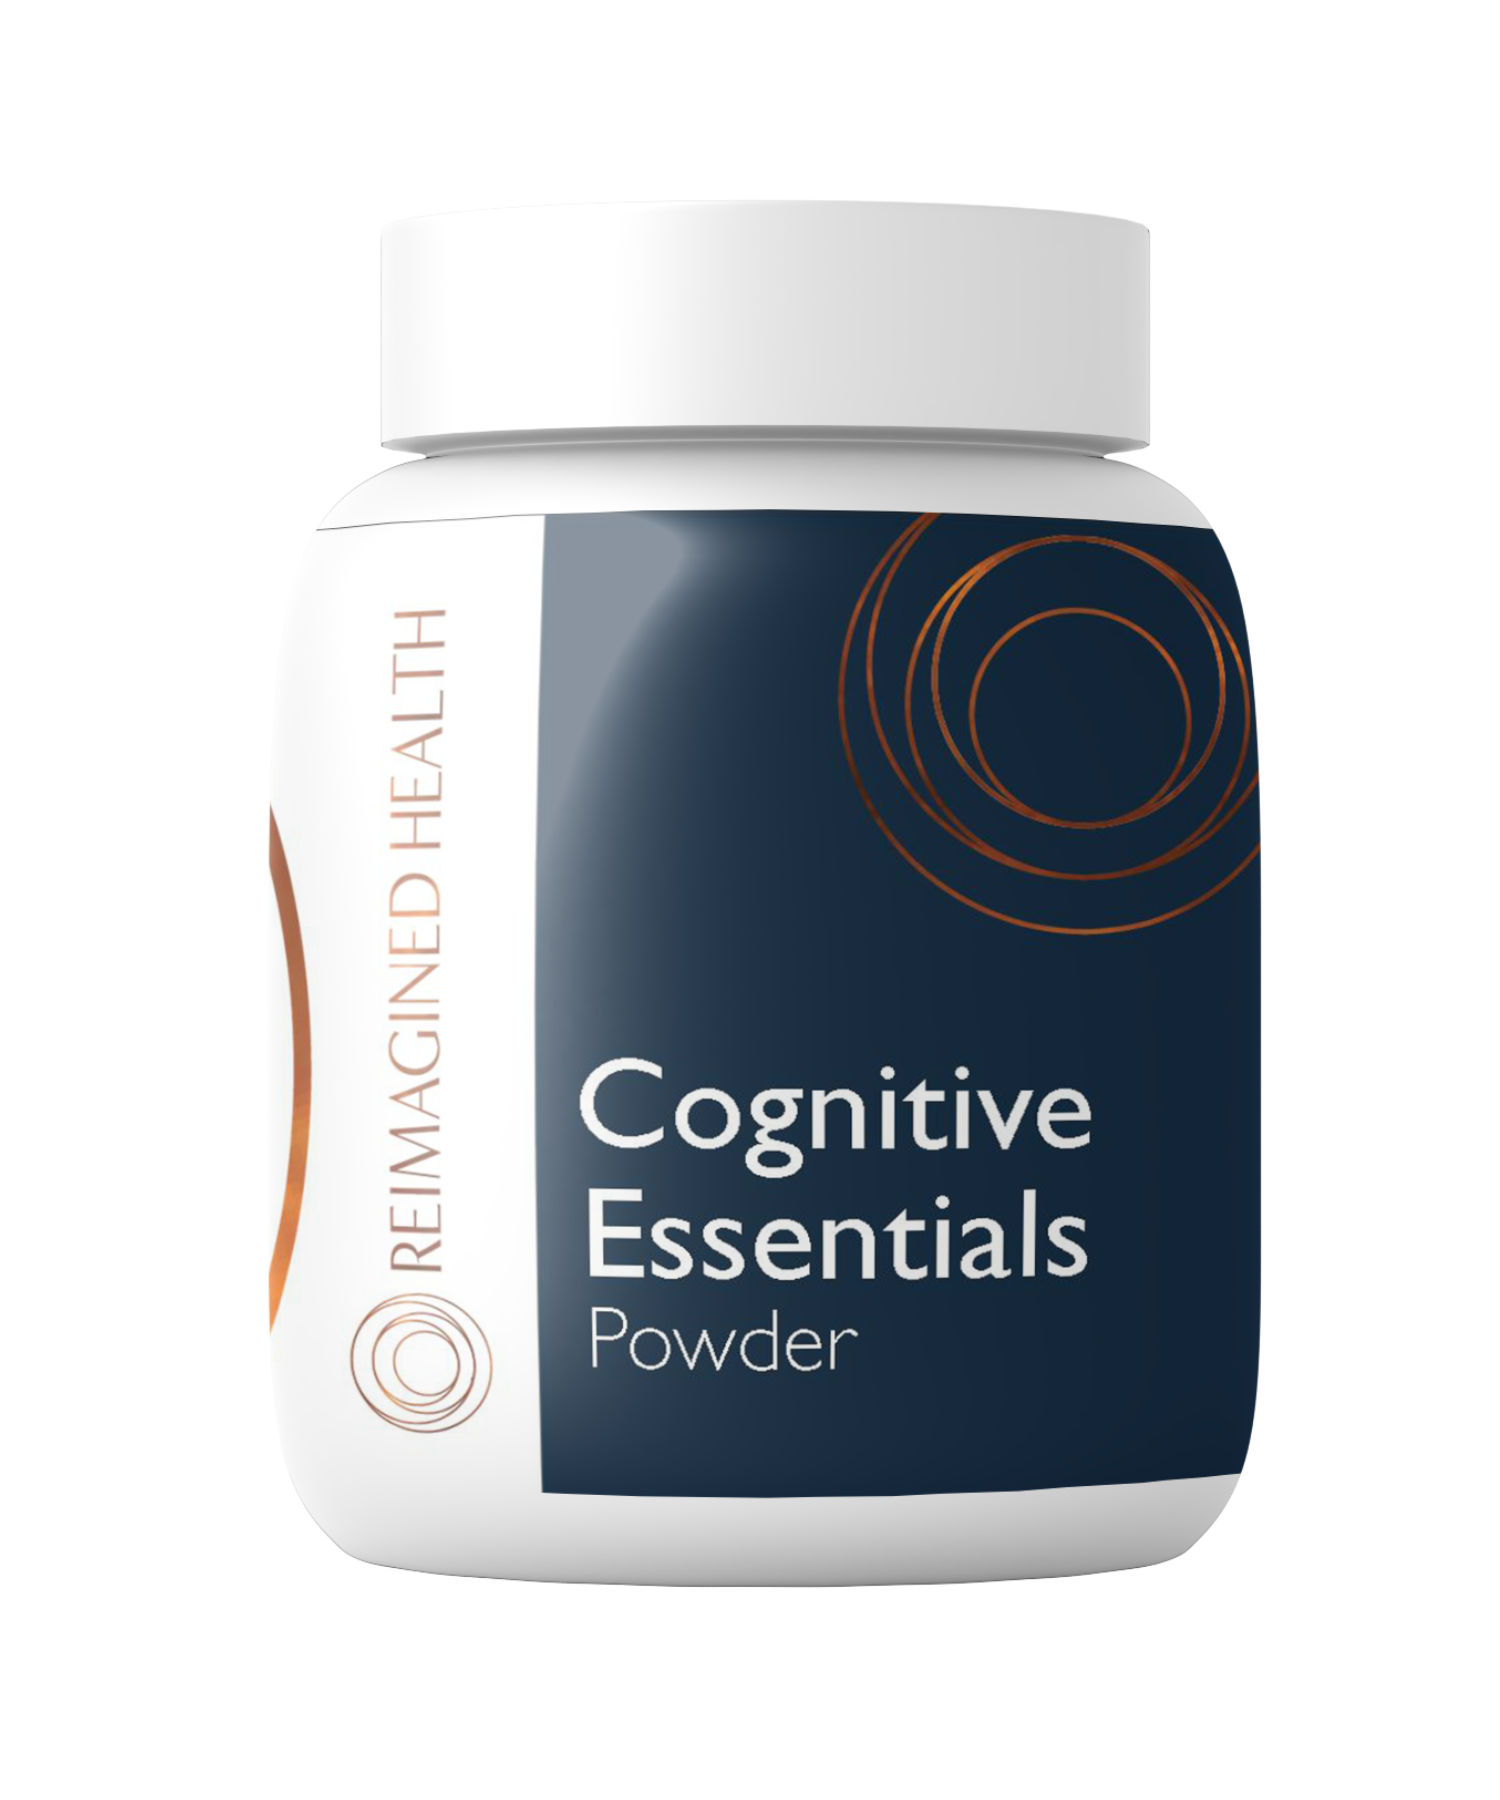 Cognitive-Essentials-Powder-B266LAT.png